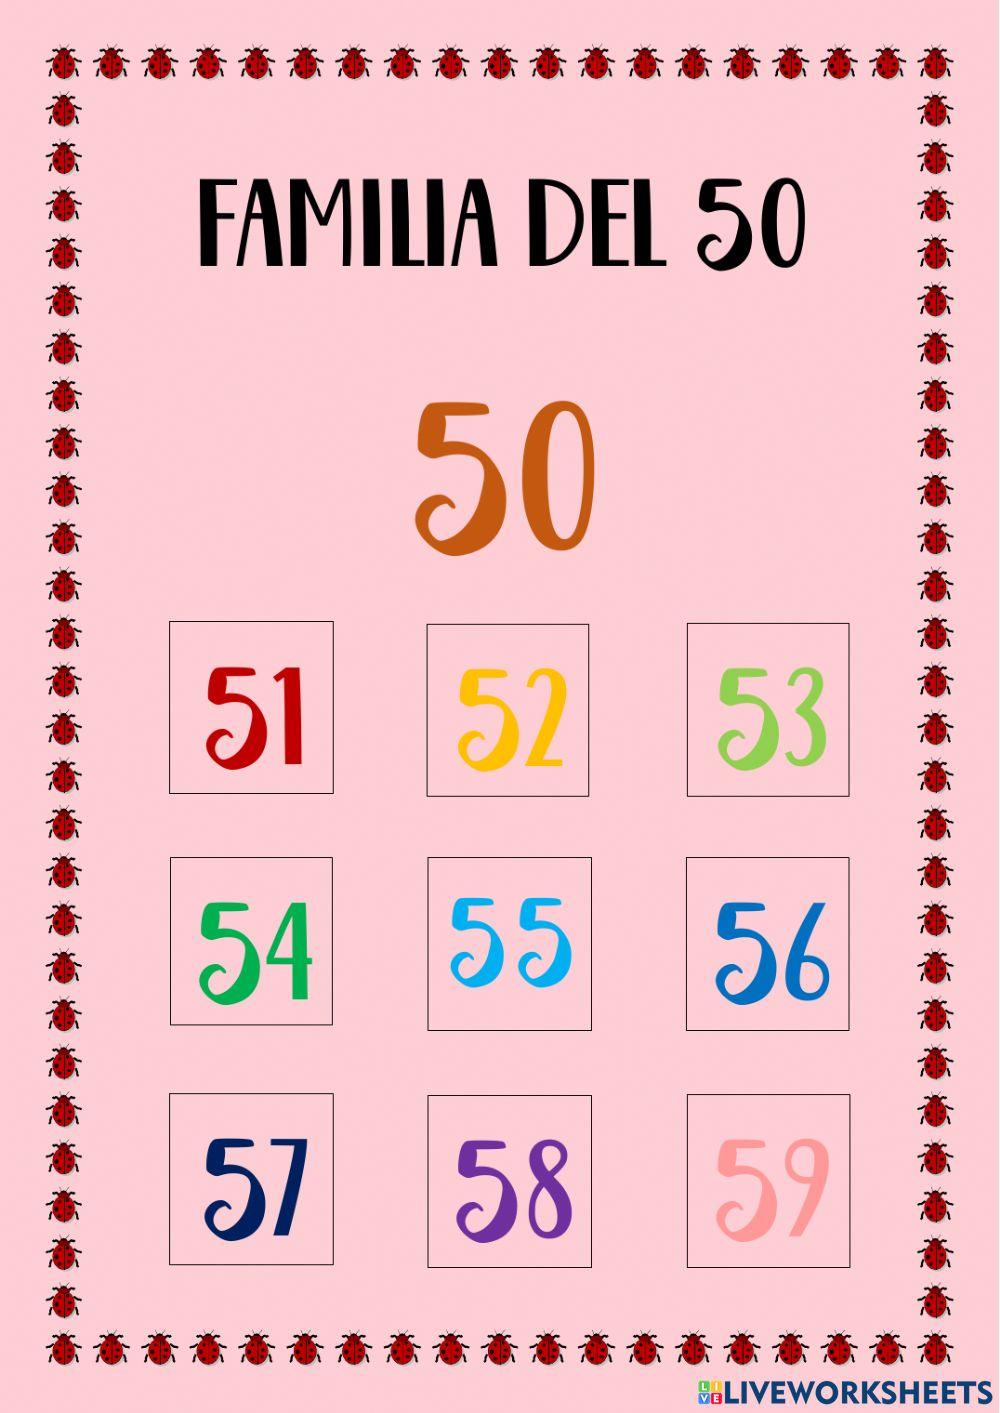 Familia del 50